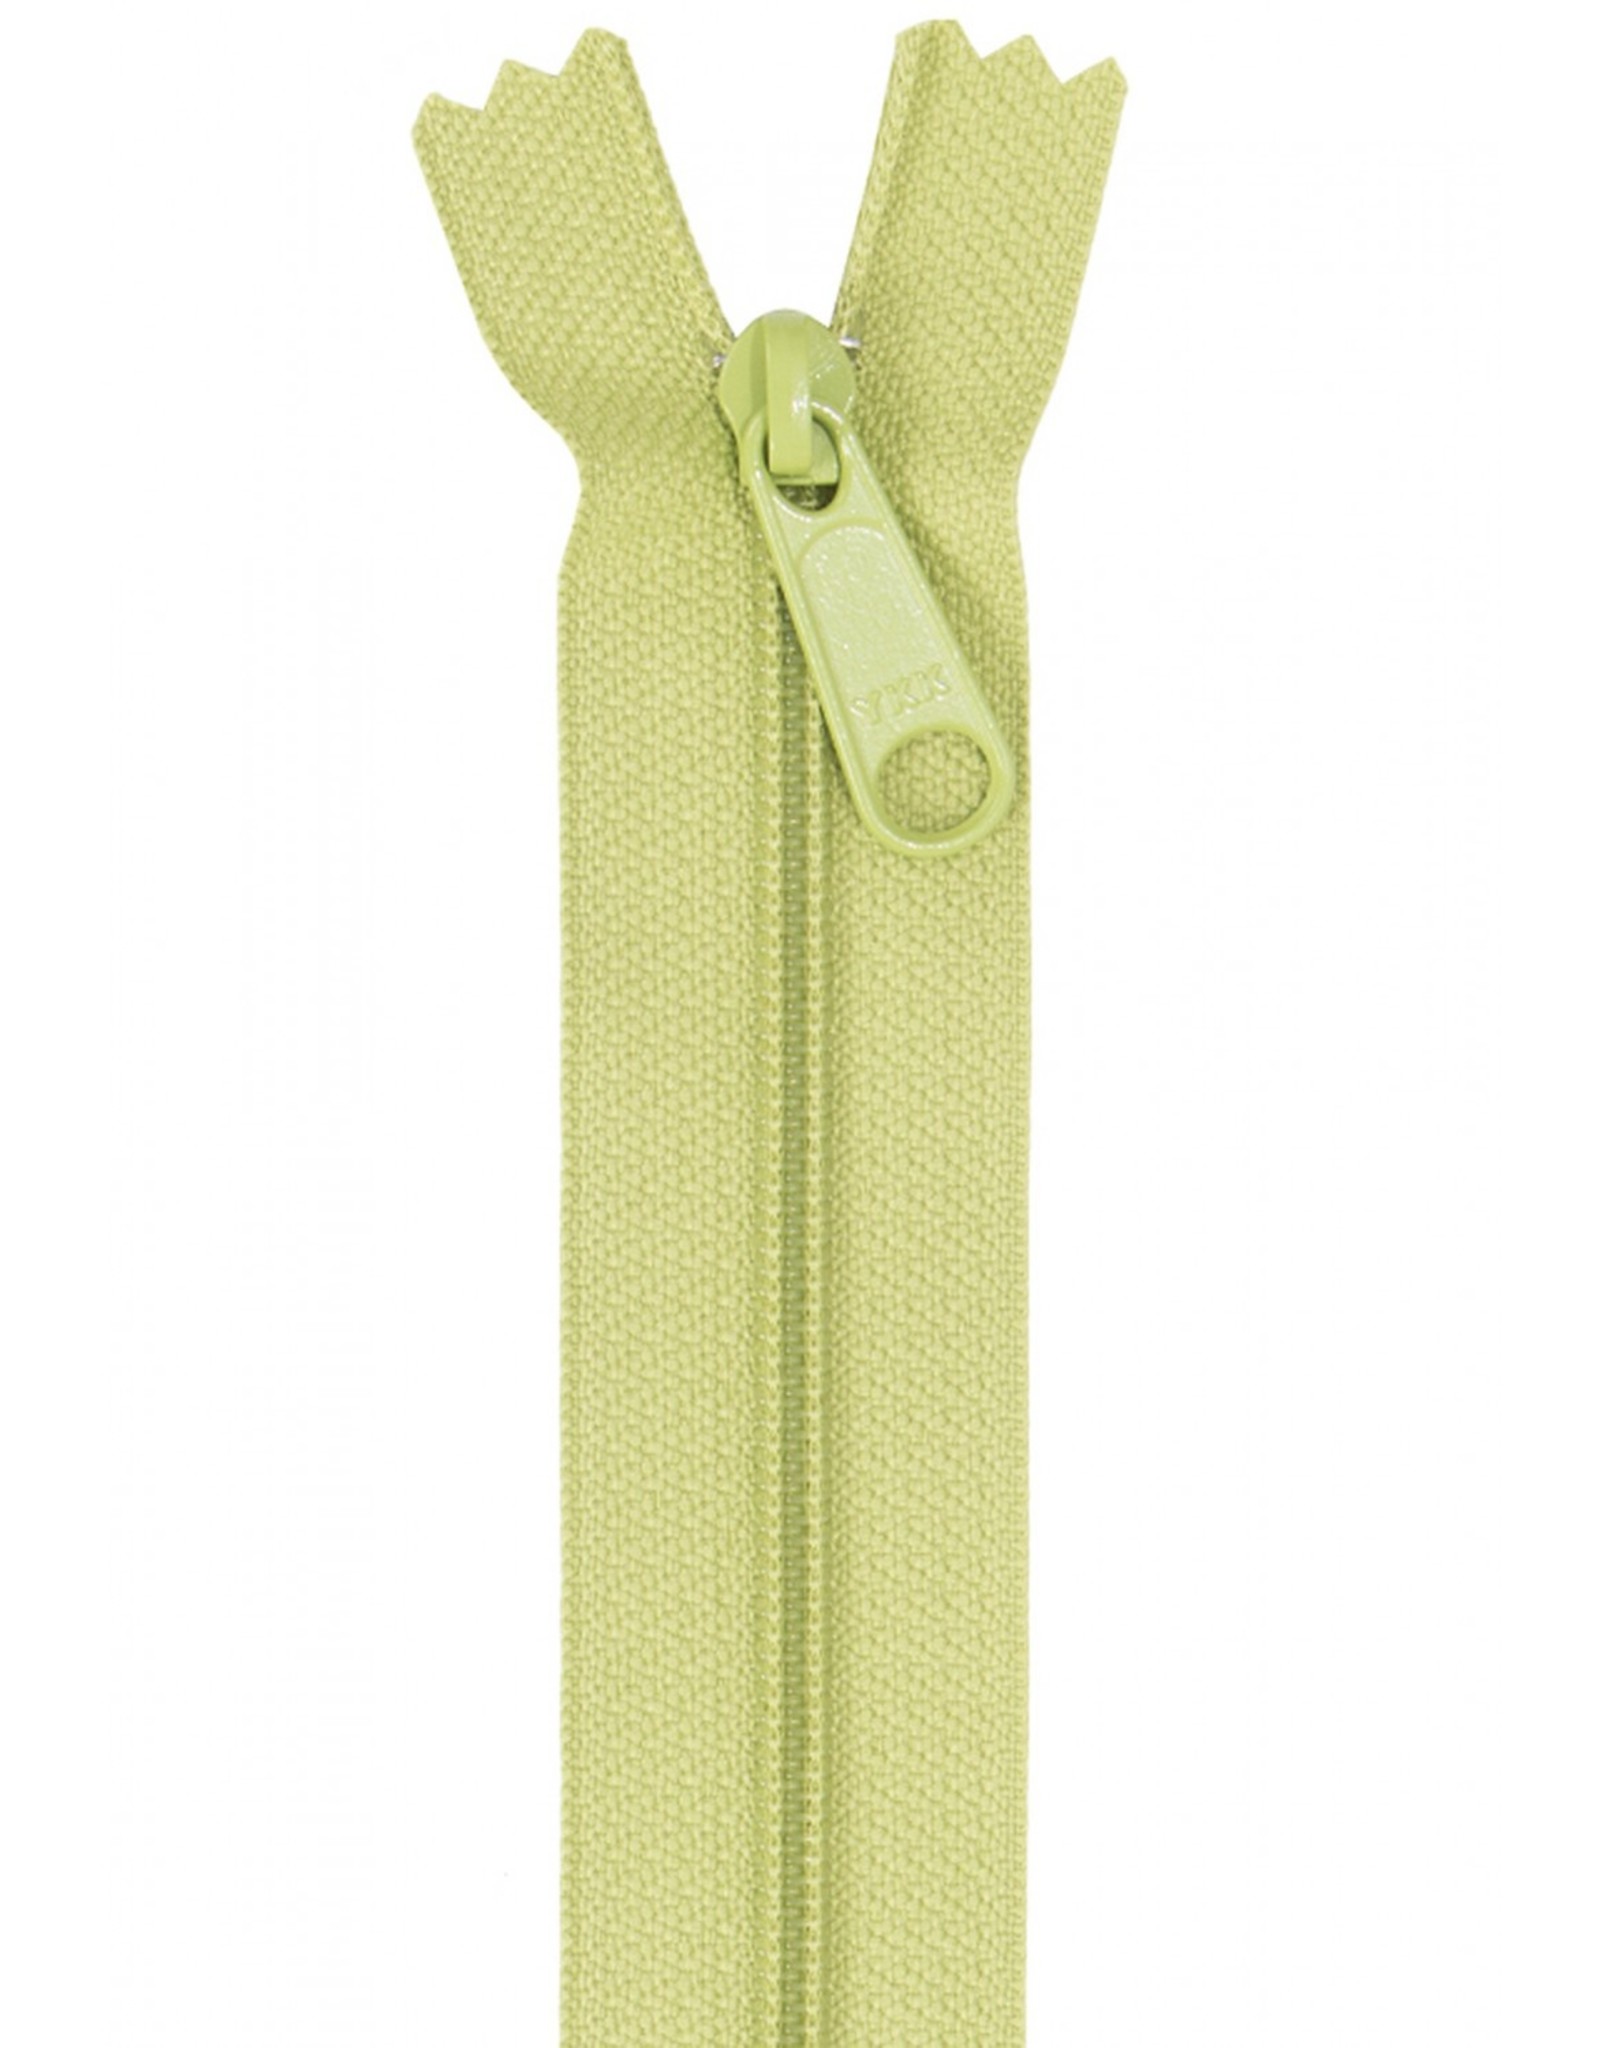 ByAnnie Handbag Zipper - 24 inch / 60 cm - Apple Green